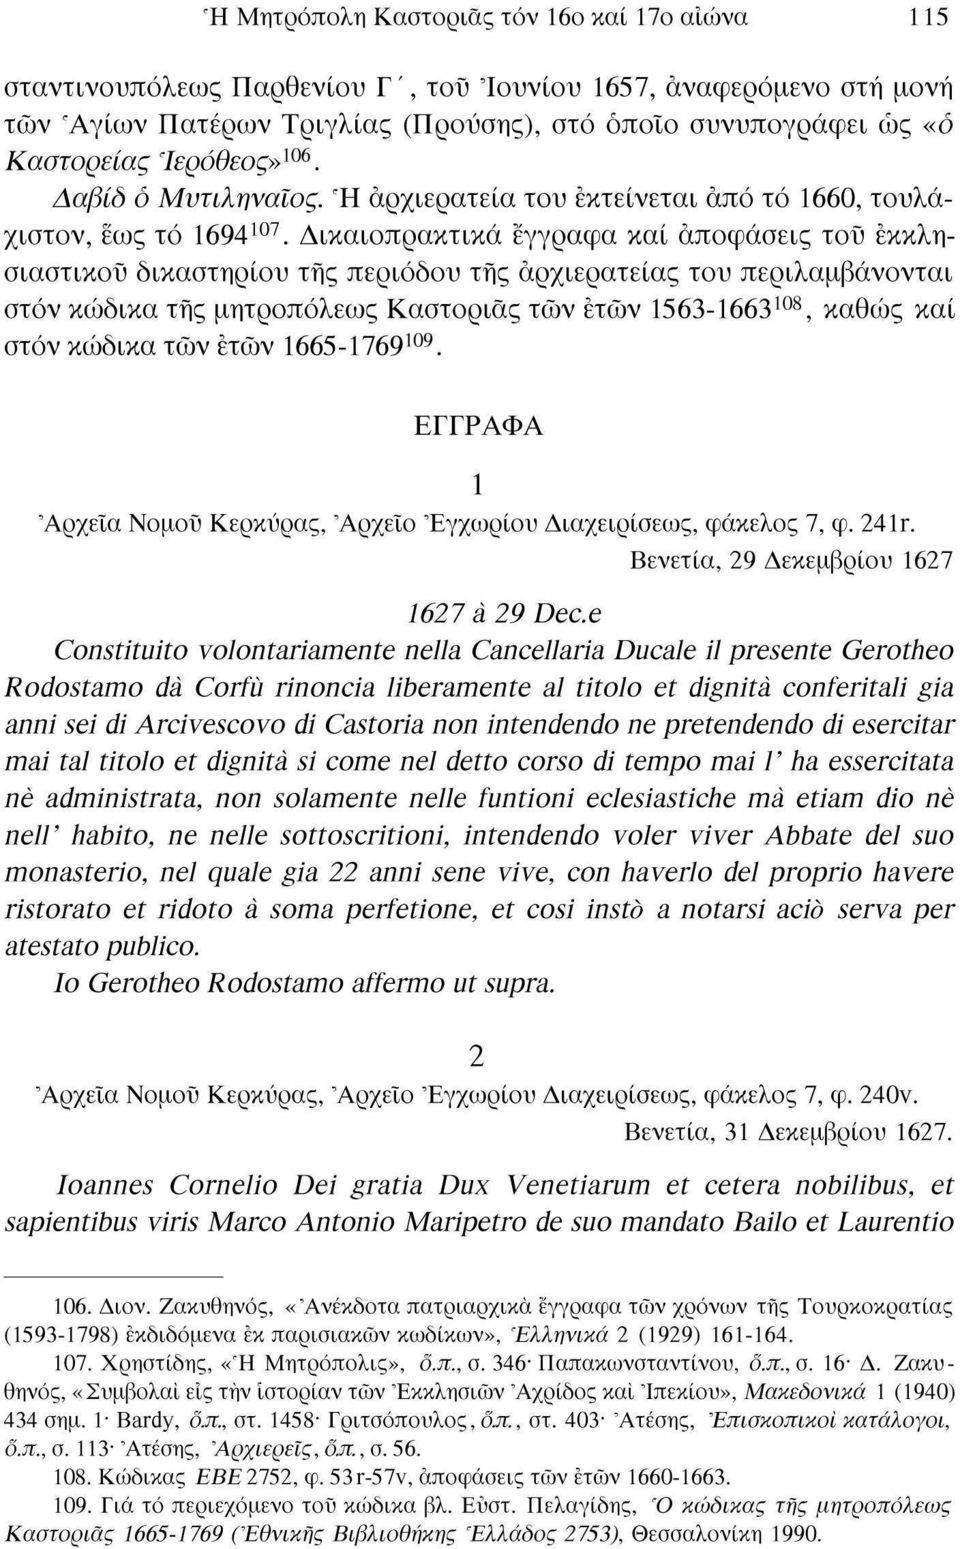 Δικαιοπρακτικά έγγραφα καί αποφάσεις του εκκλησιαστικοί) δικαστηρίου της περιόδου της αρχιερατείας του περιλαμβάνονται στον κώδικα της μητροπόλεως Καστοριάς των ετών 1563-1663 108, καθώς καί στον